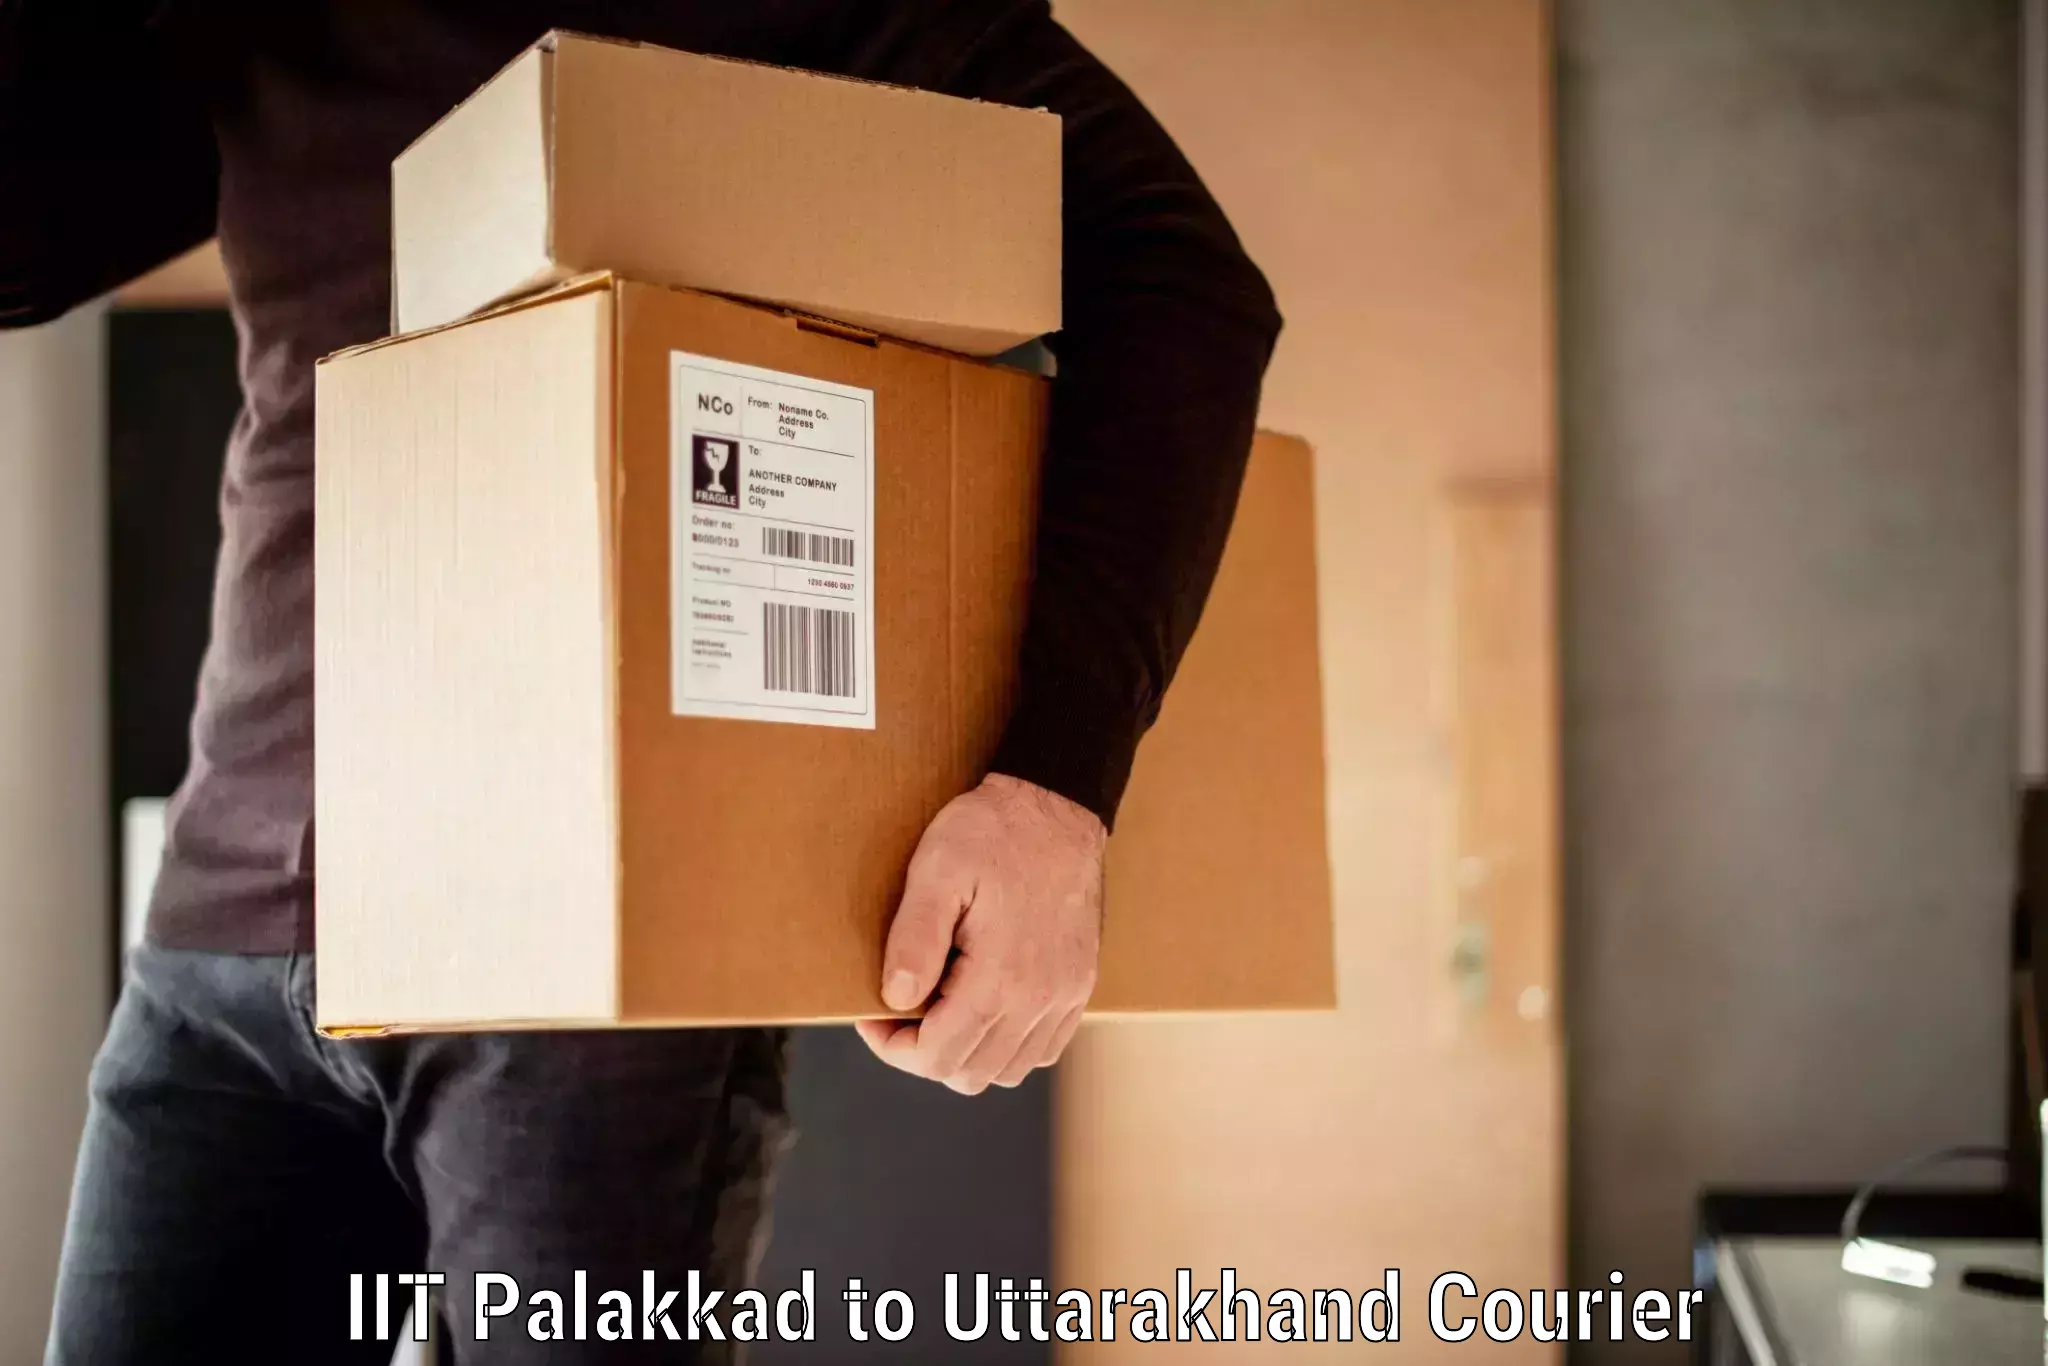 Luggage delivery network IIT Palakkad to Doiwala